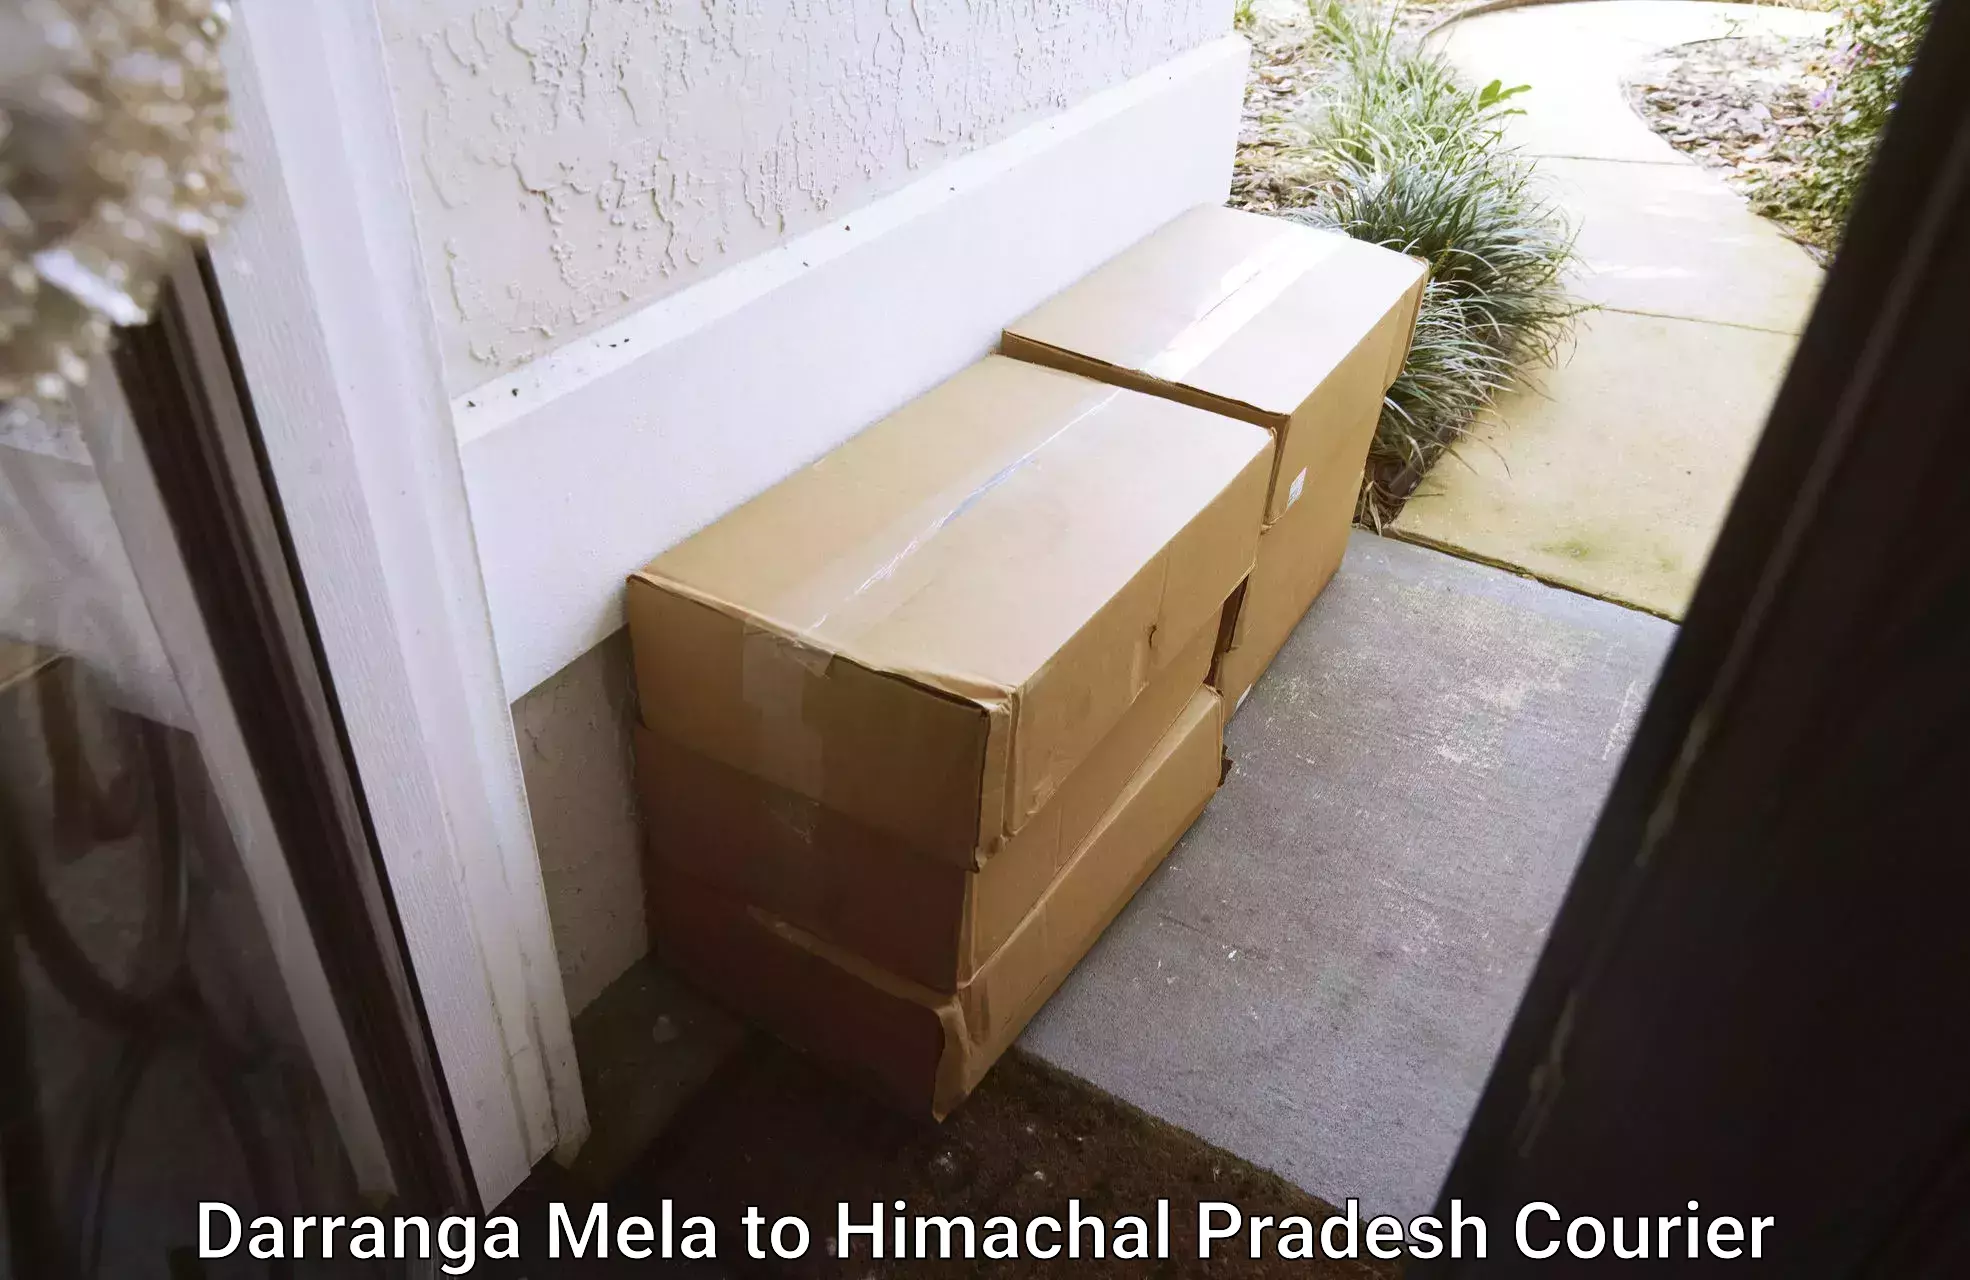 Personal courier services Darranga Mela to Indora